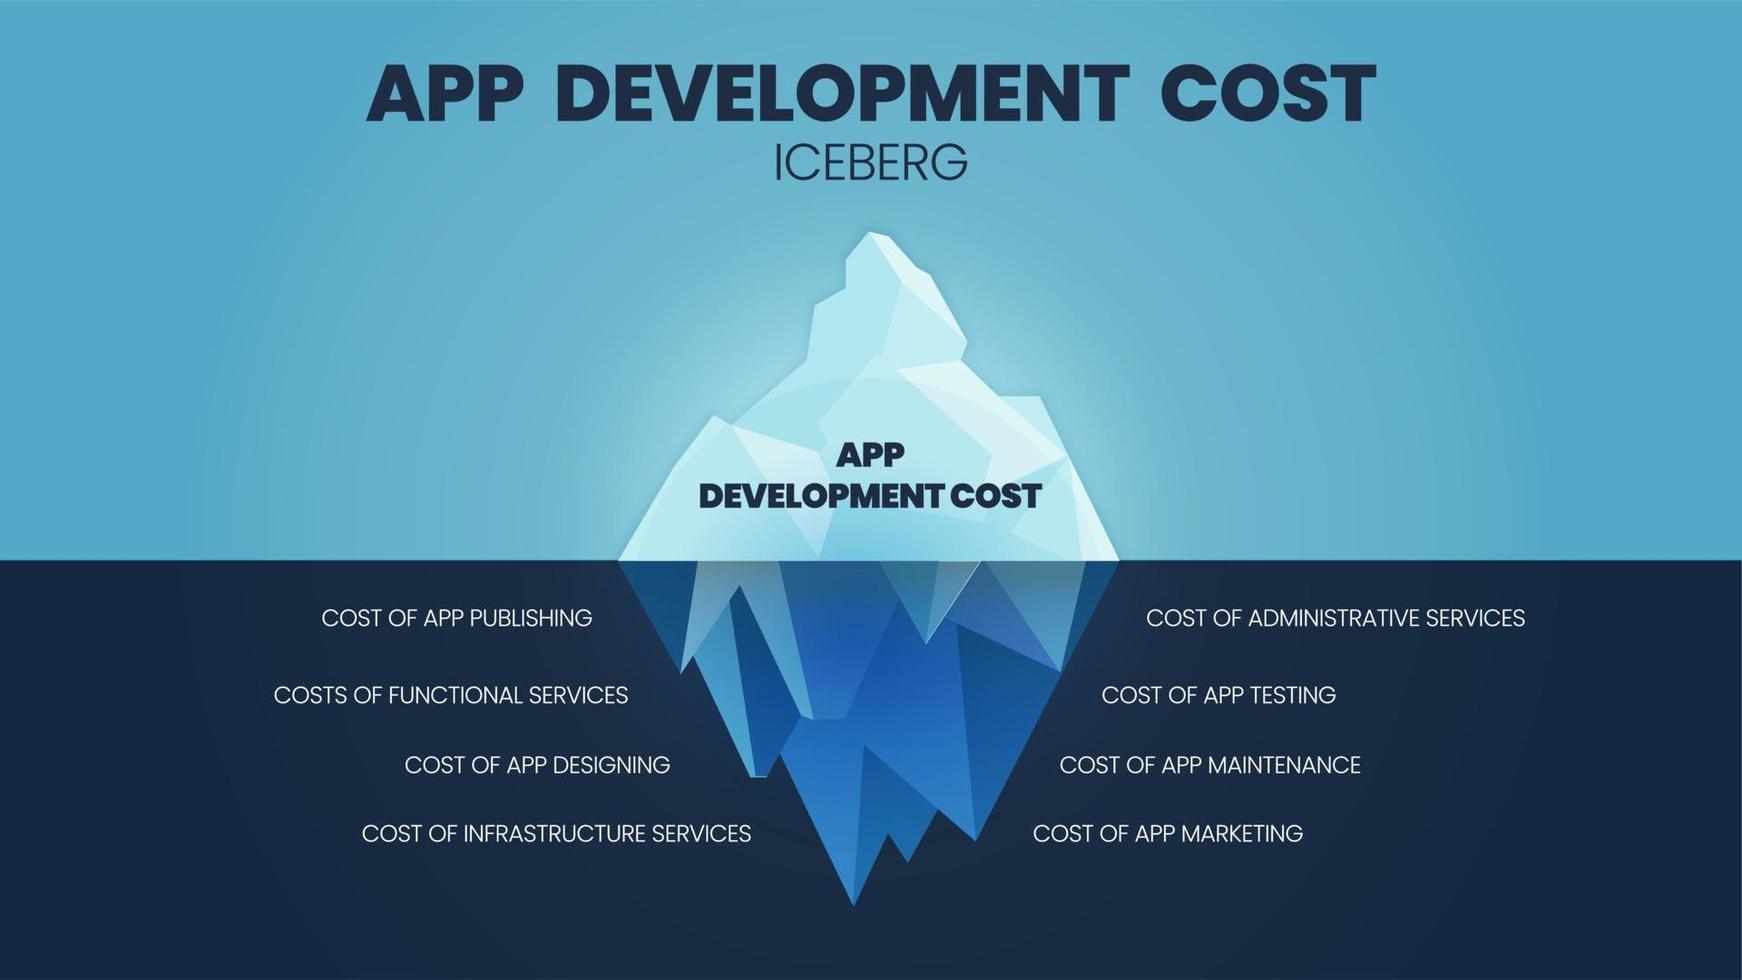 un vecteur de coûts de développement d'applications le modèle iceberg a des coûts cachés sous l'eau tels que la publication, le service fonctionnel, administratif, les tests, la conception, la maintenance, le service d'infrastructure et le marketing